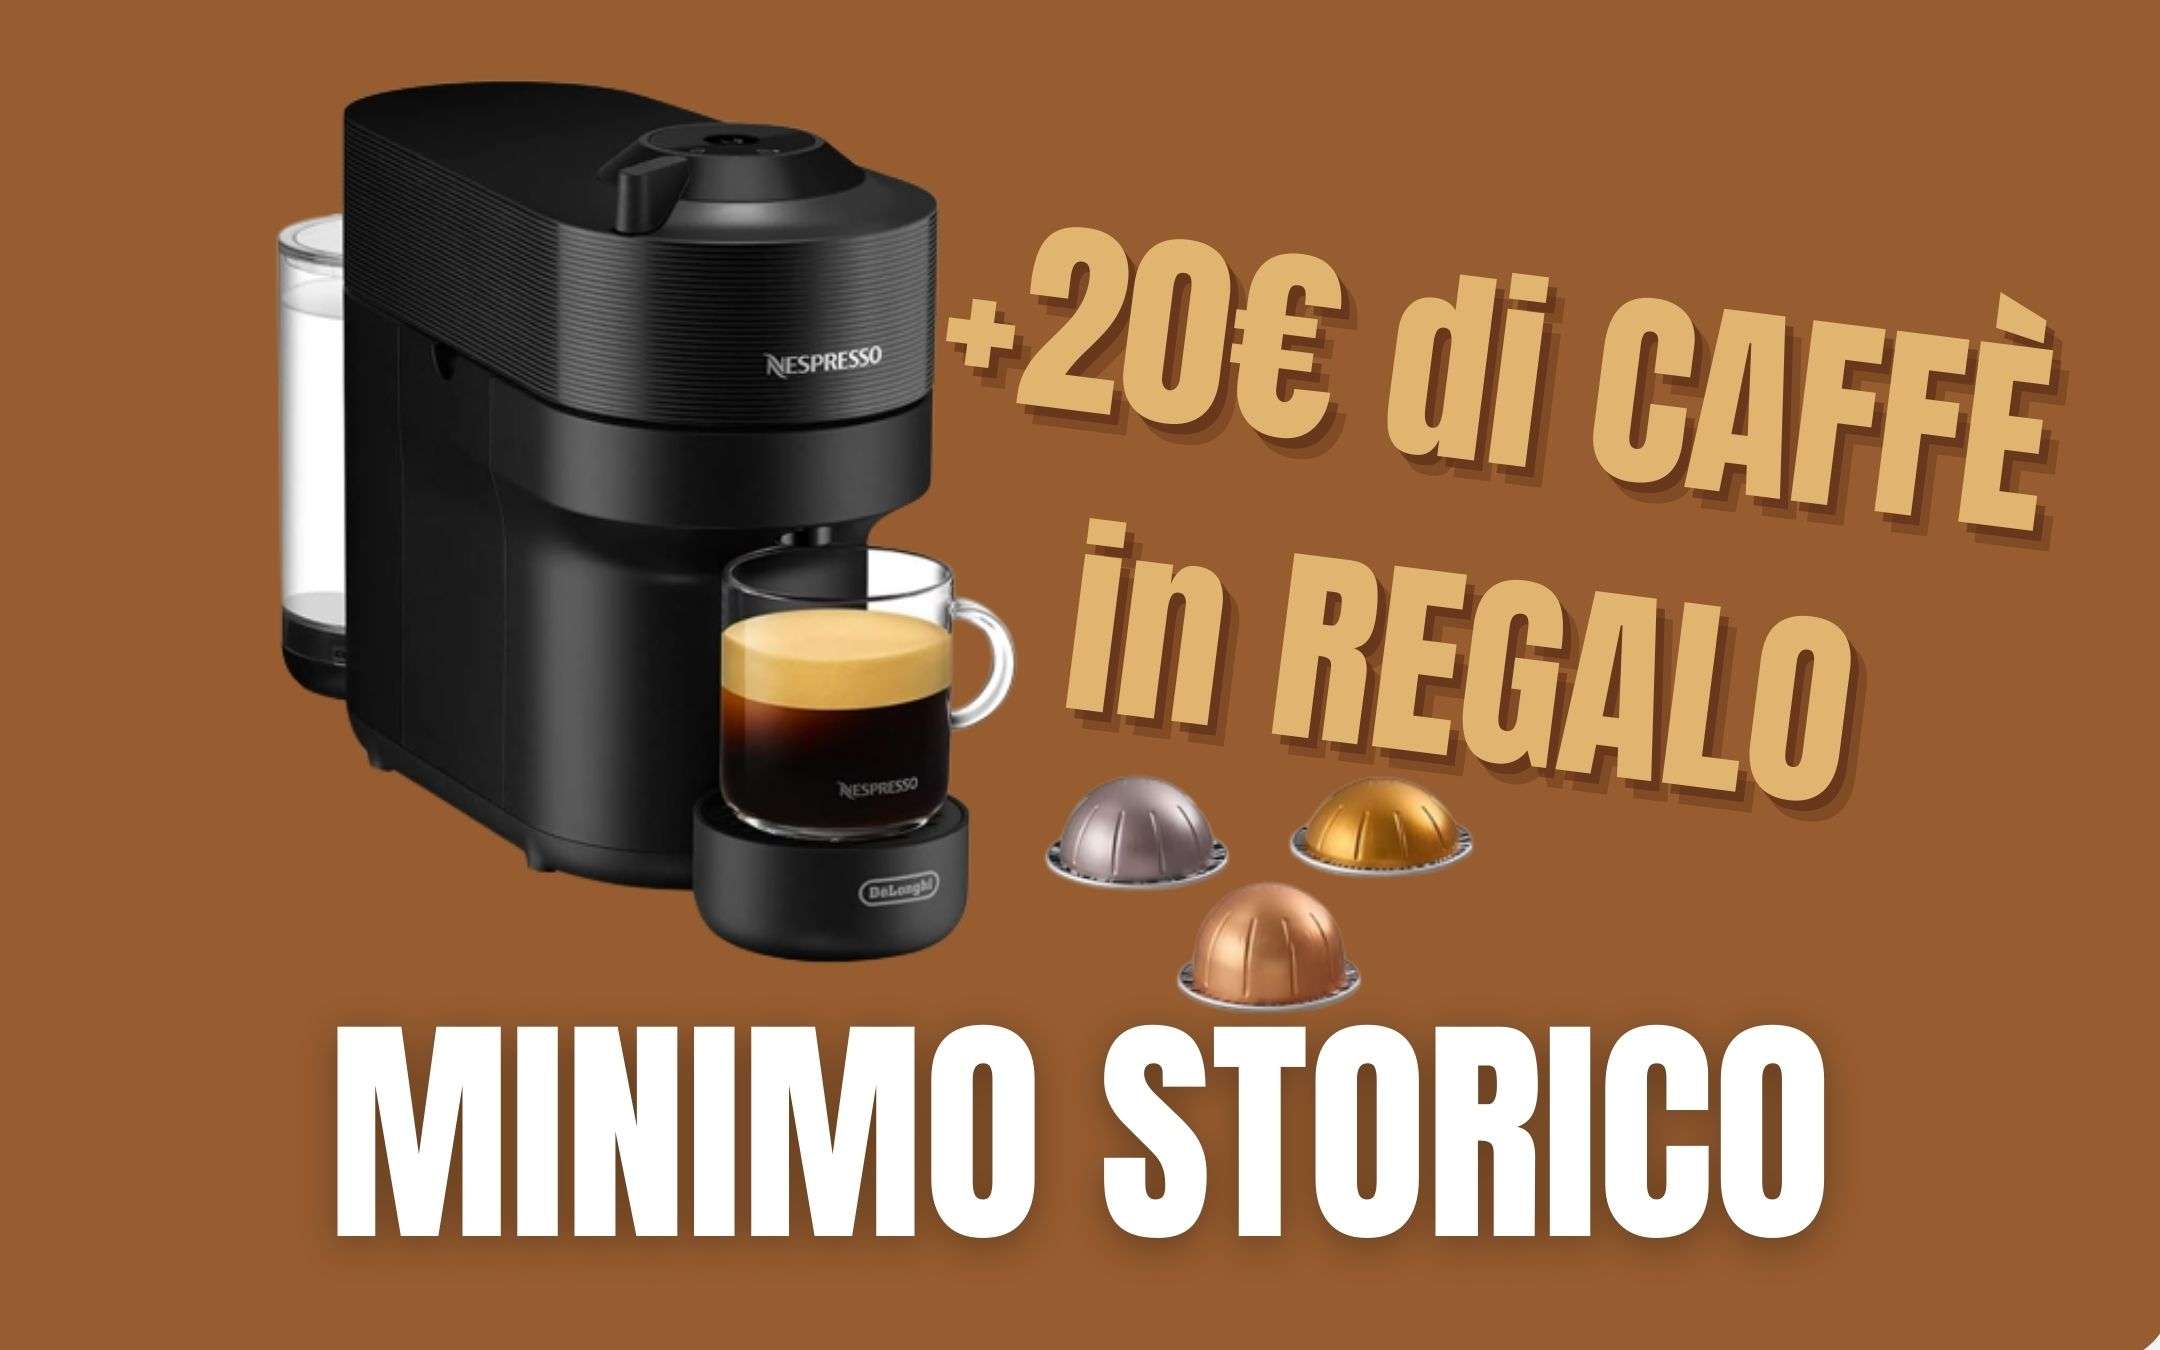 Macchina per il caffè De'Longhi al MINIMO STORICO + 20€ di caffè Nespresso  in regalo